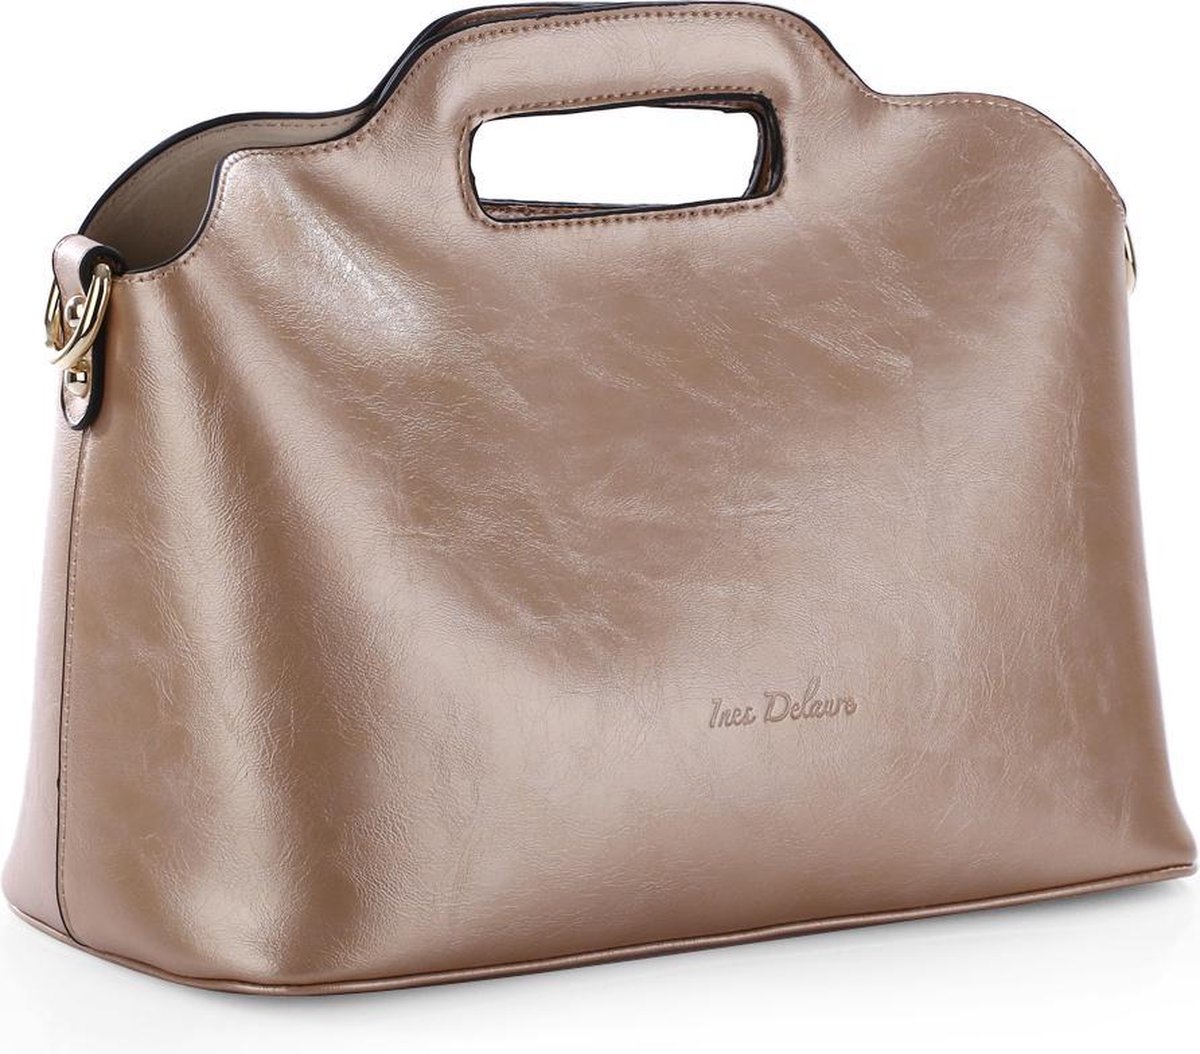 Ines Delaure - Handige tas in tas/bag in bag - handtas/crossbody - goud metallic